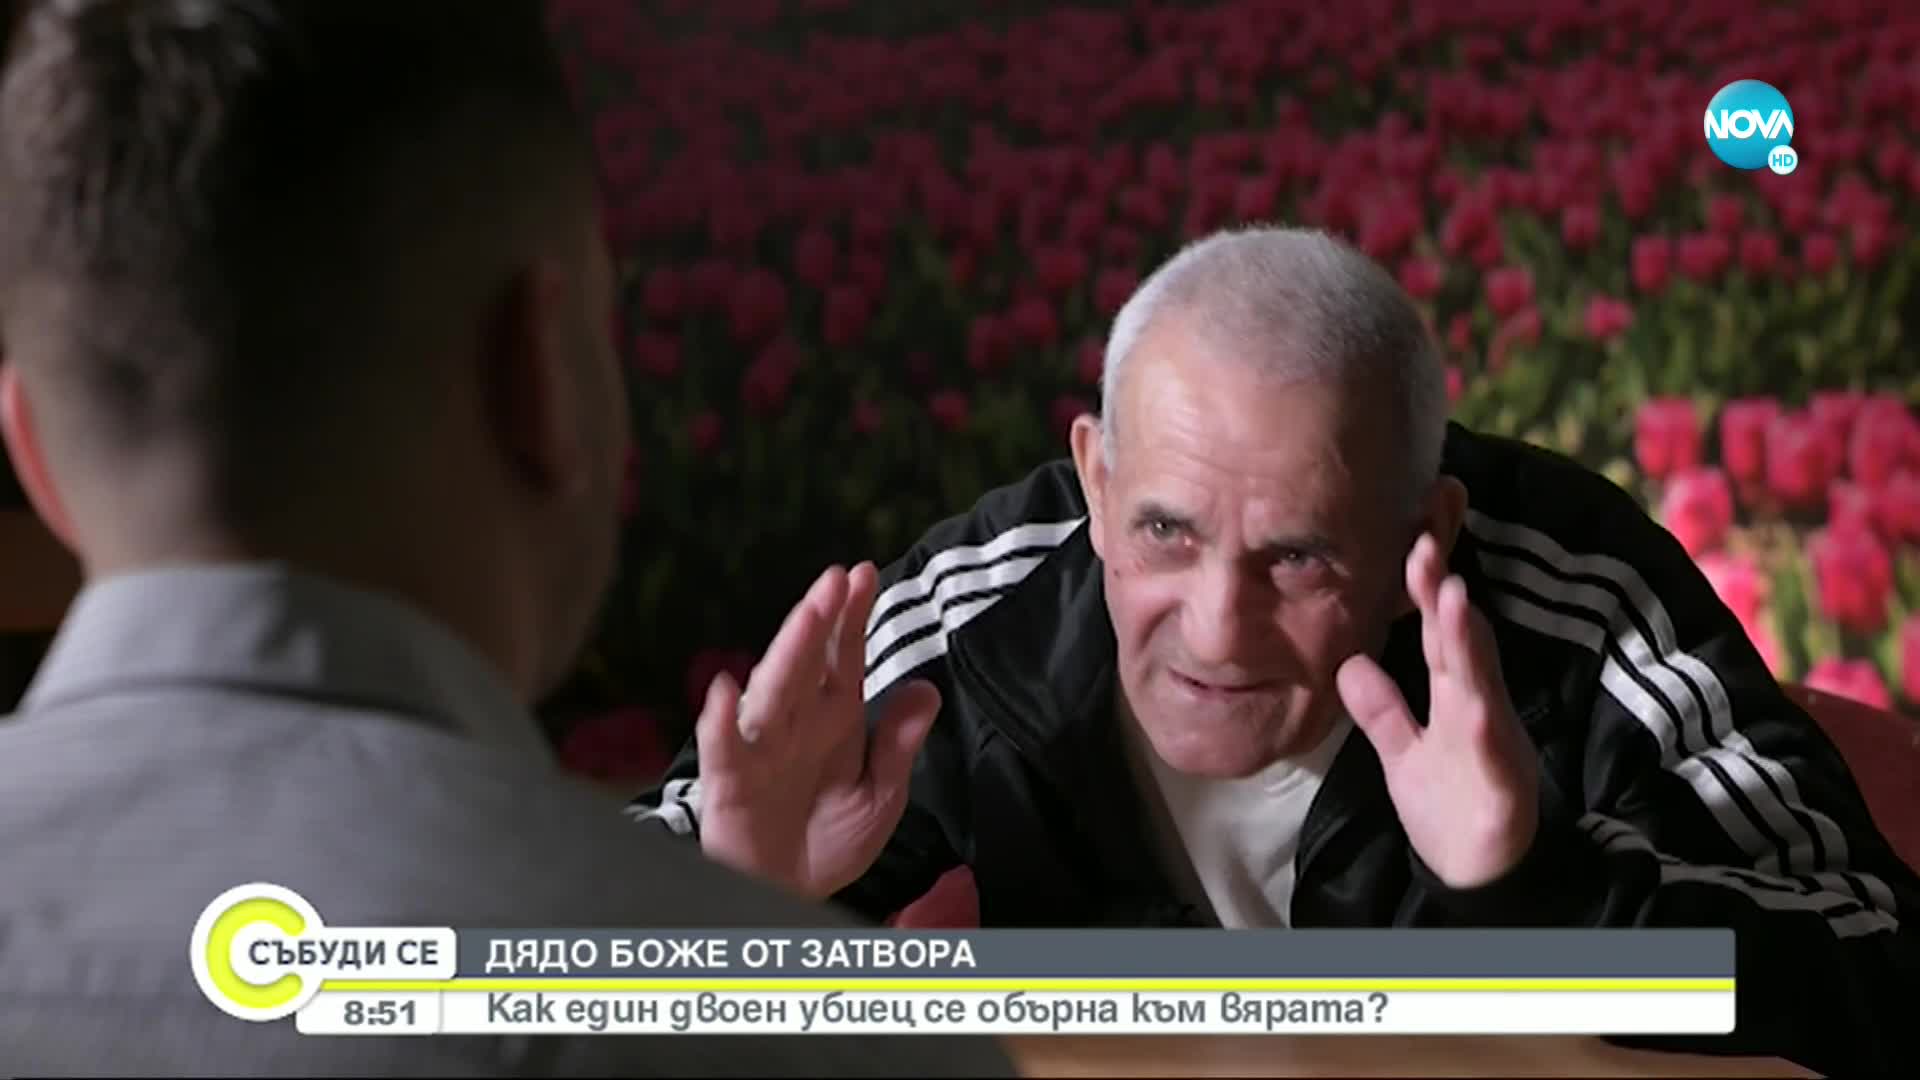 Дядо Боже - затворникът с най-дълъг престой в Софийския затвор